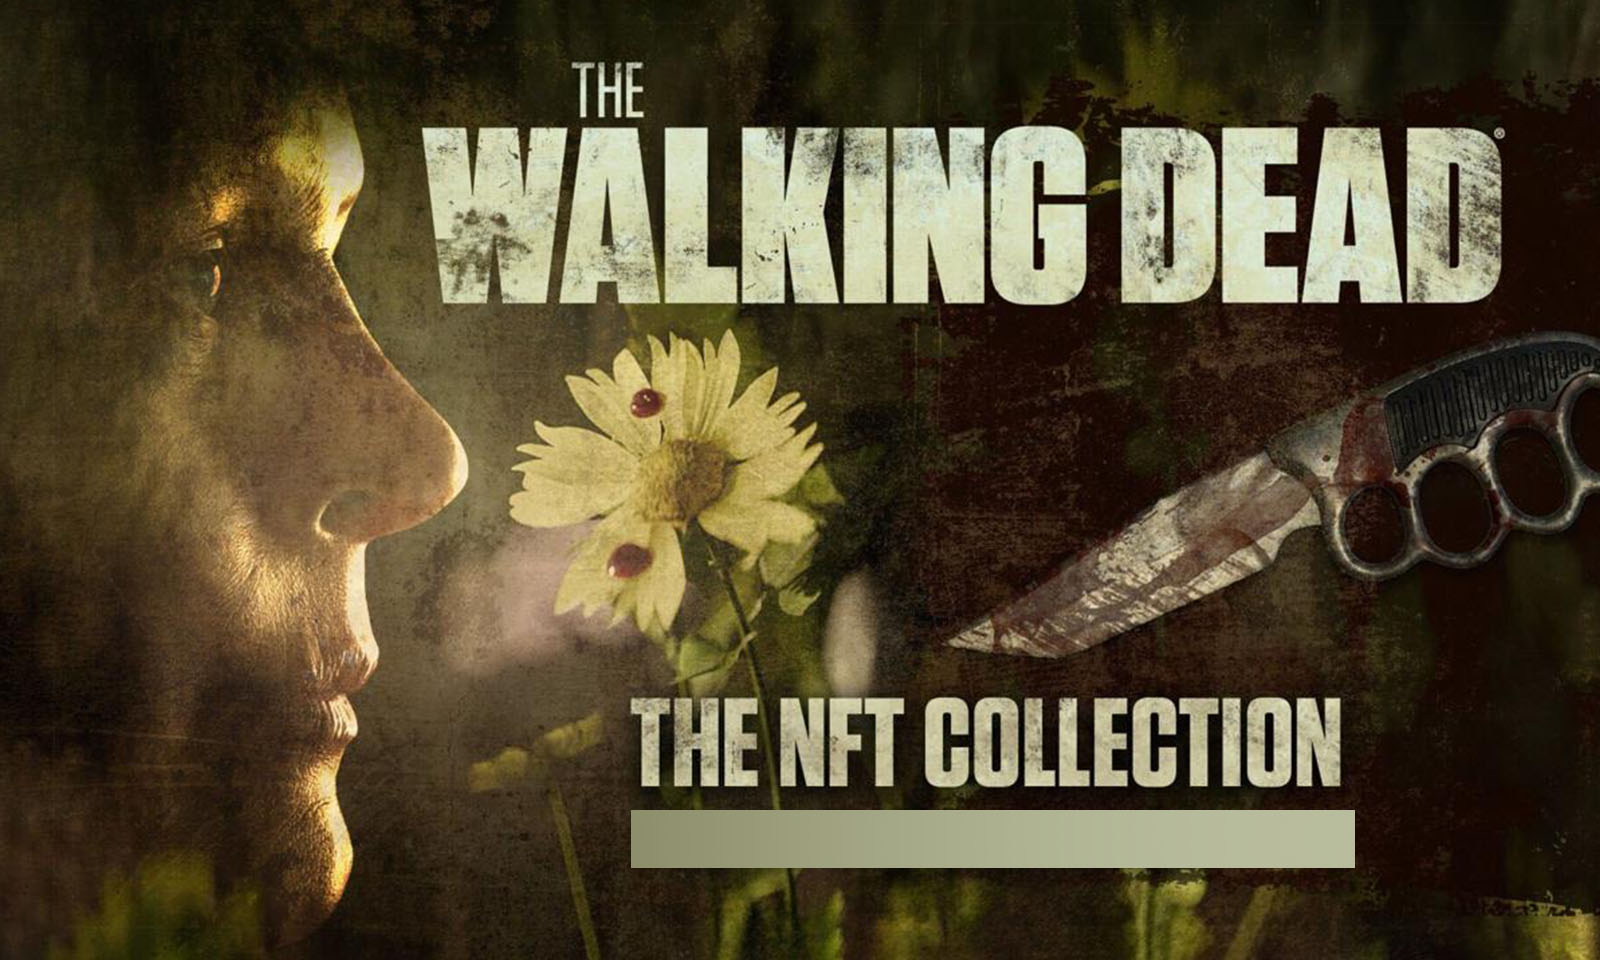 Imagem promocional de NFTs de The Walking Dead.